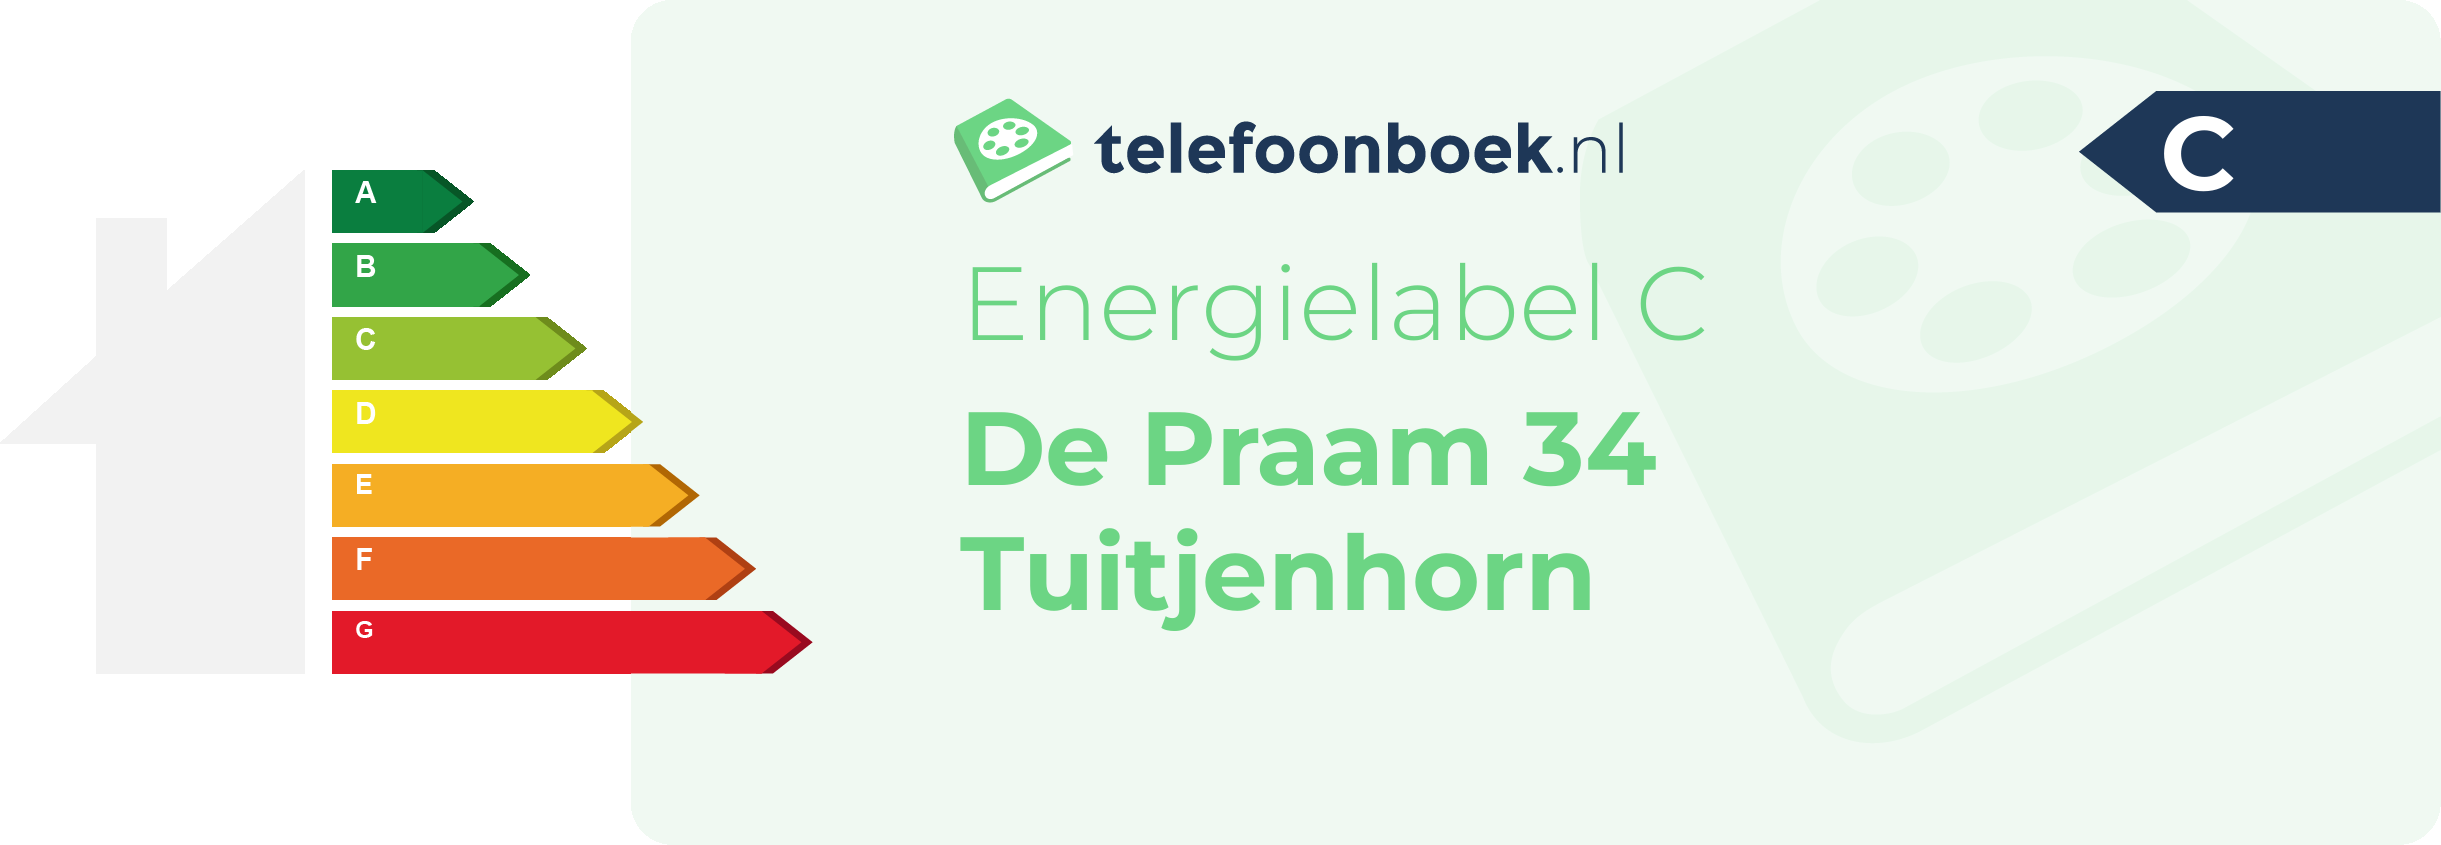 Energielabel De Praam 34 Tuitjenhorn